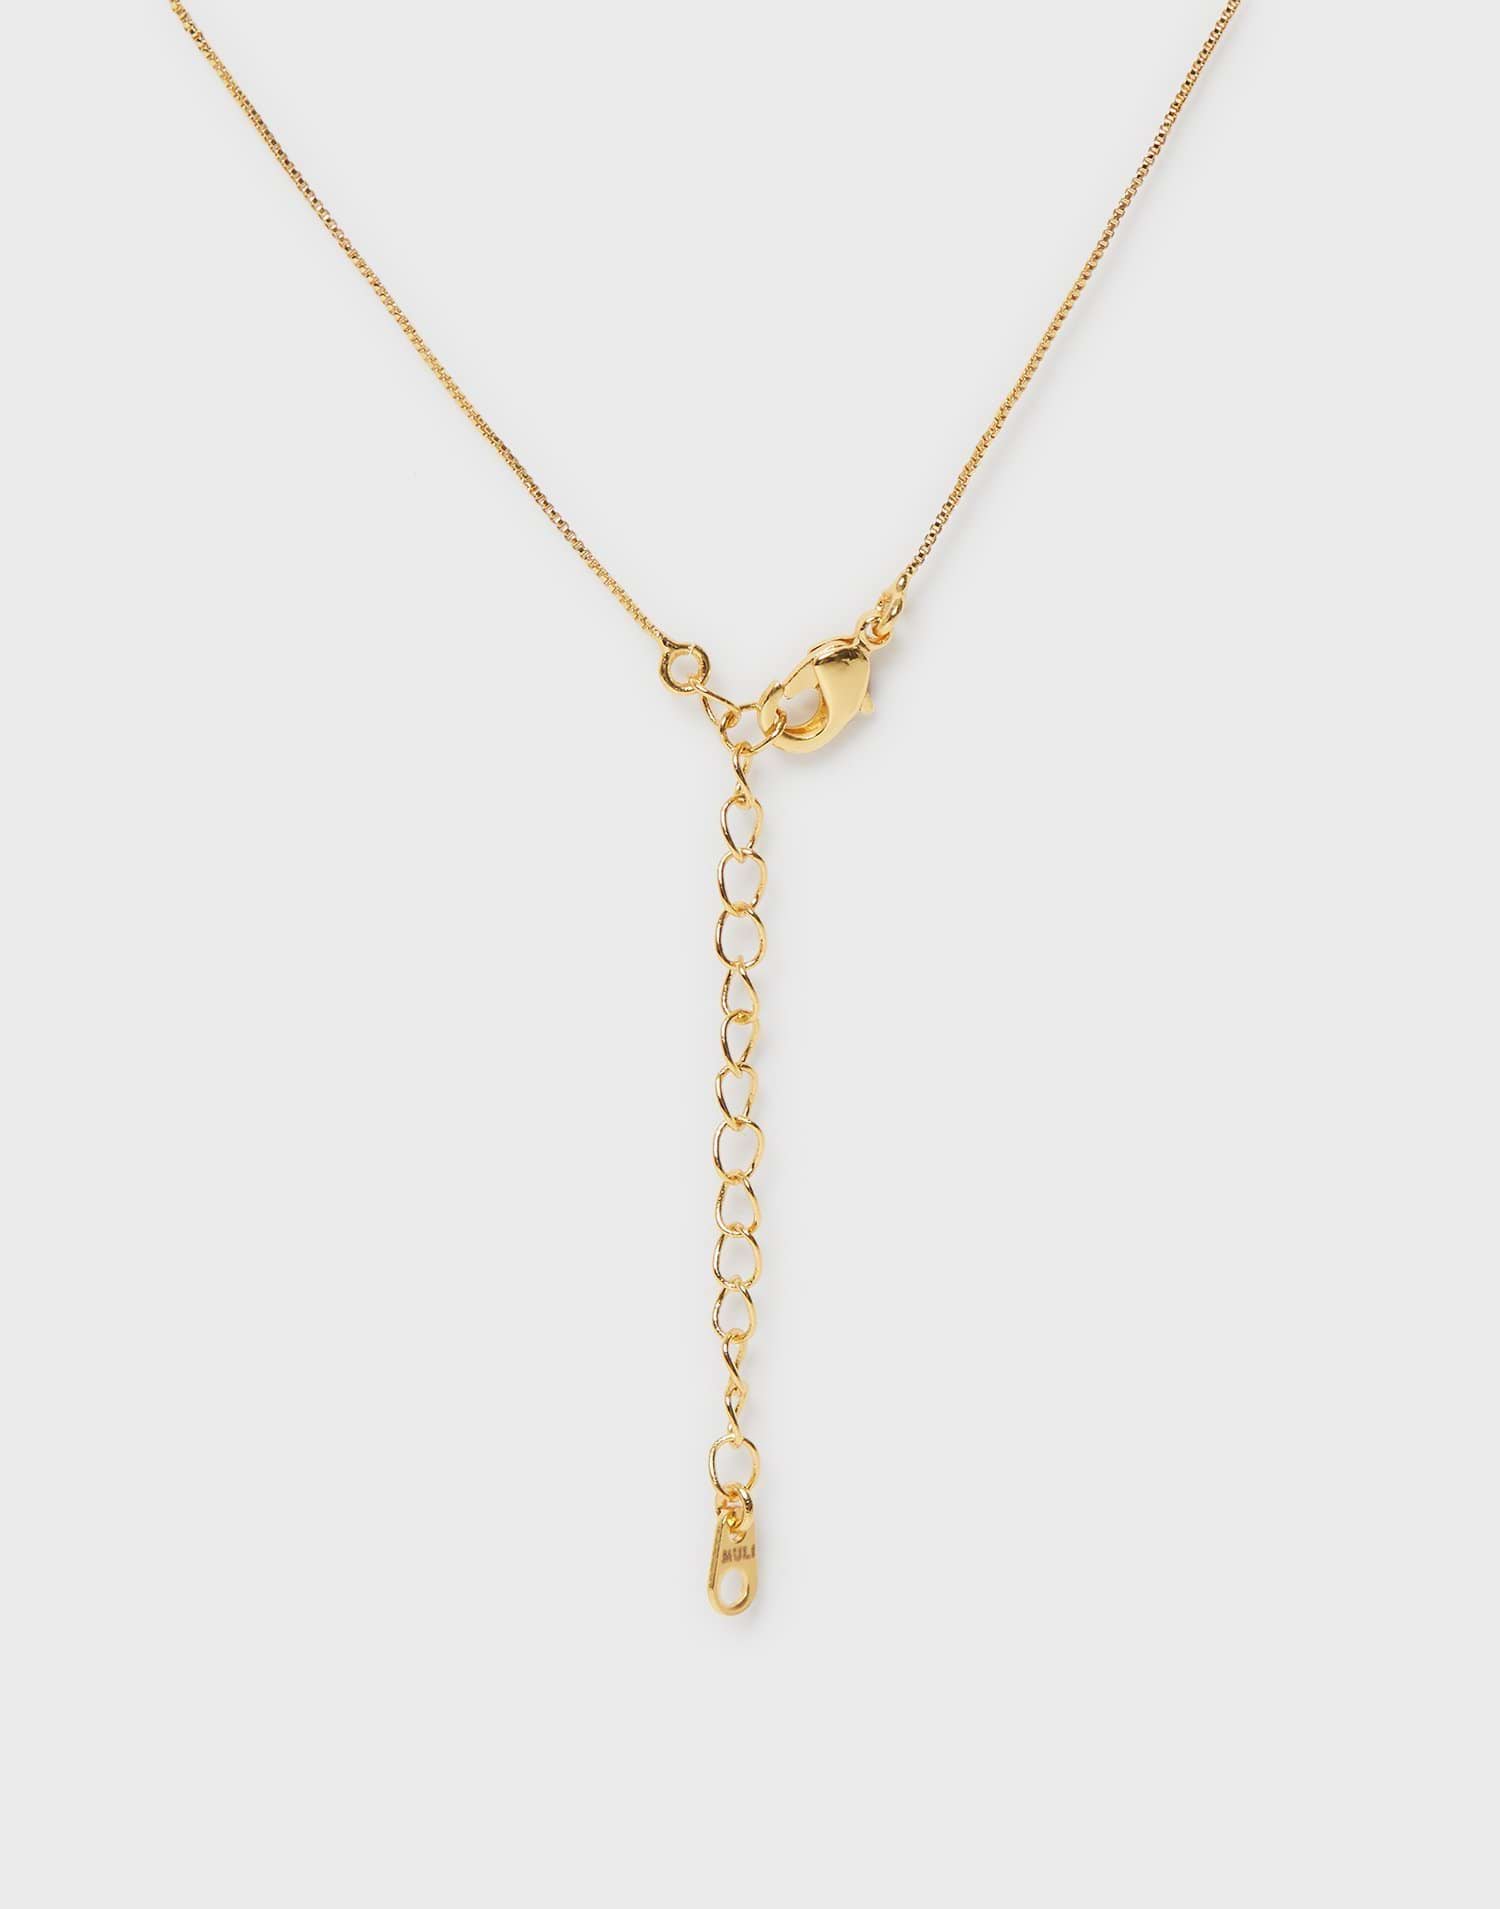 Minimalistic Box Chain Necklace